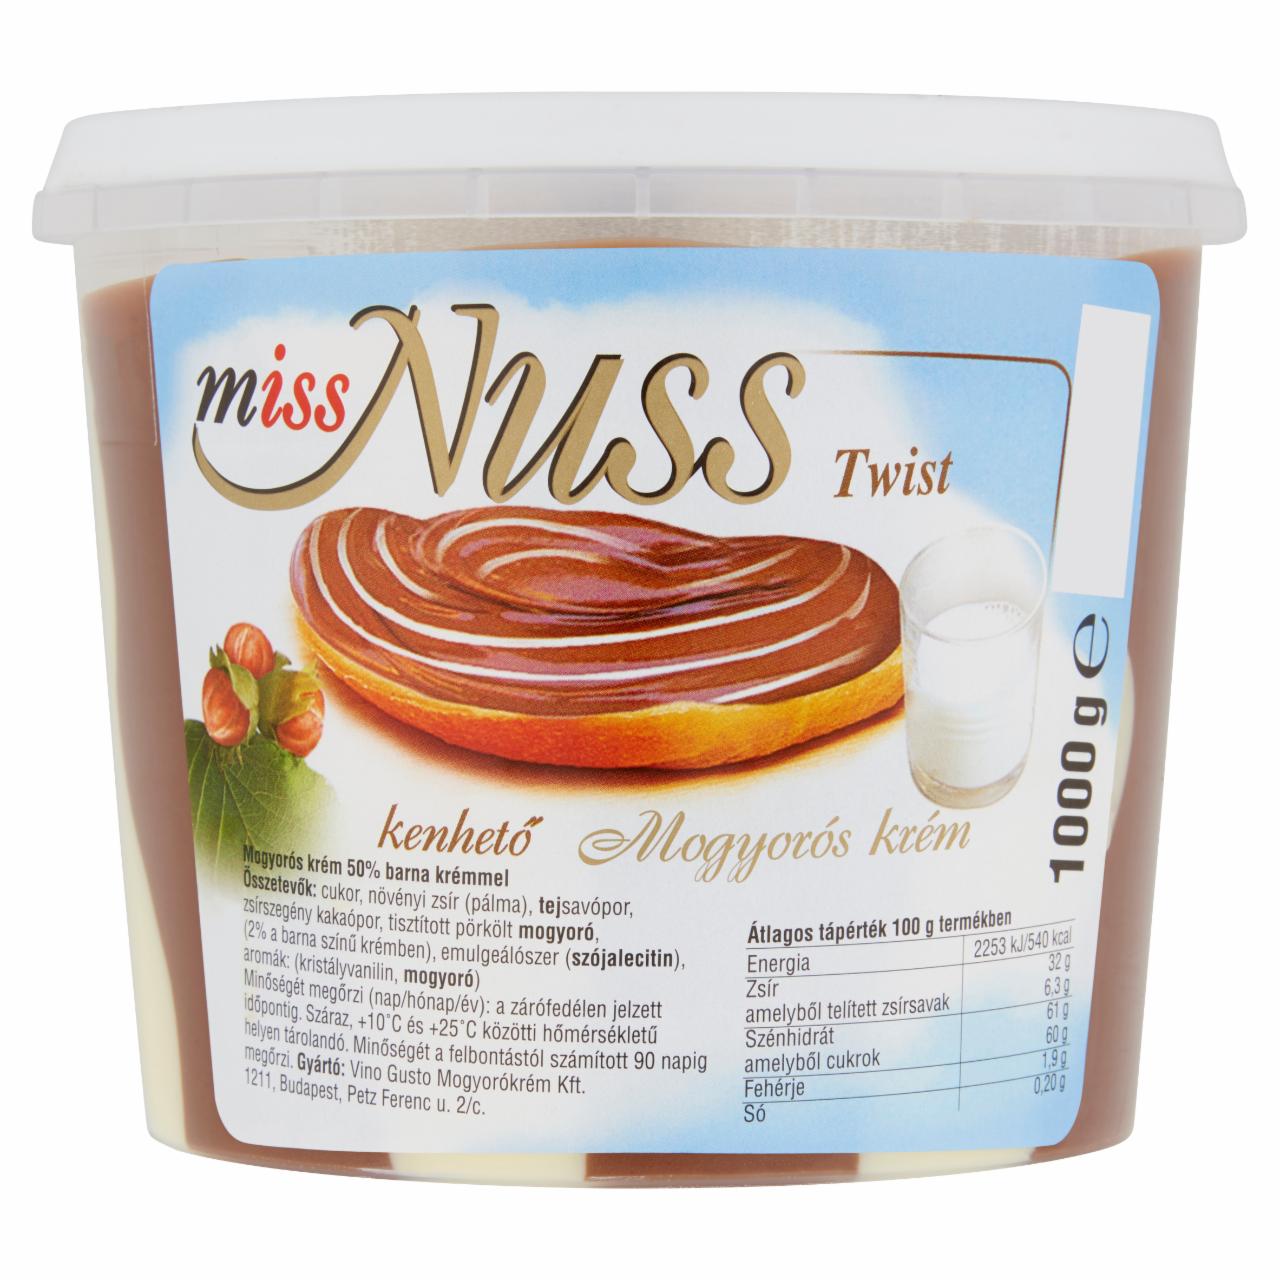 Képek - Miss Nuss Twist mogyorós krém 1000 g